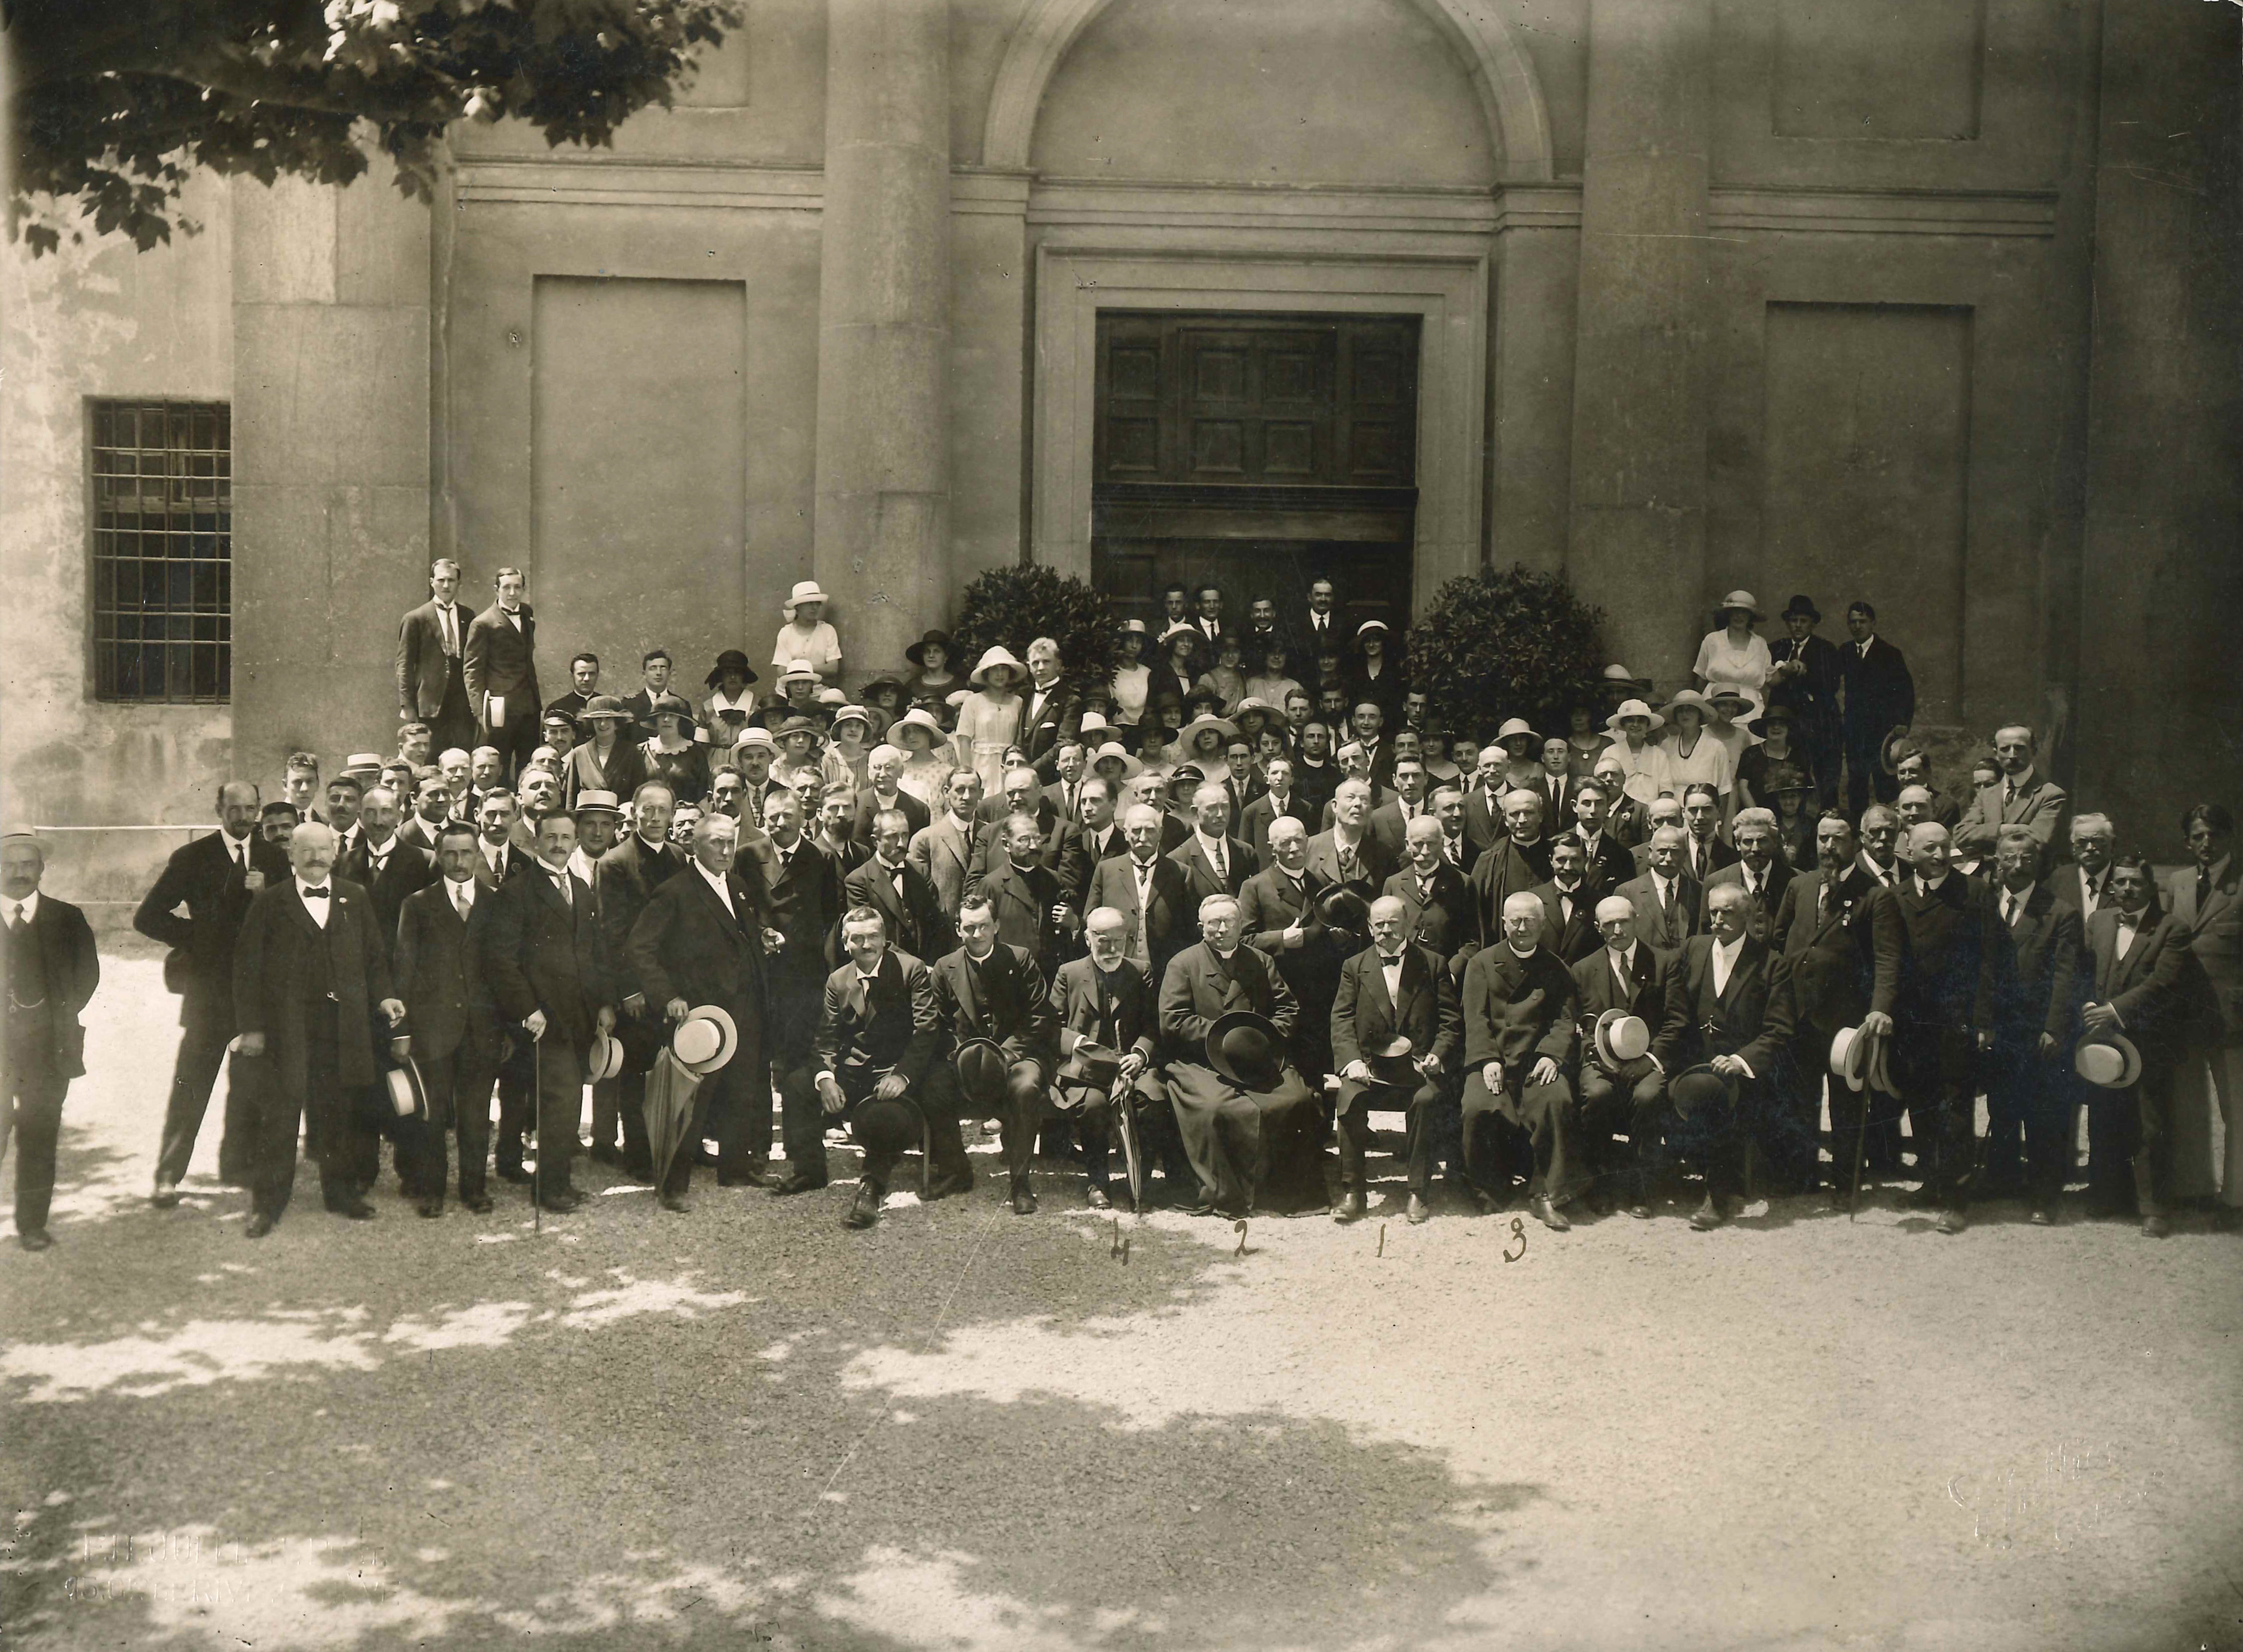 Photographie de la sortie de la Grand Messe lors de la rentrée des catholiques romains dans leur église à Sainte-Croix à Carouge qui leur avait été prise le 31 décembre 1873, juin 1921 (cote AEG ECRG 11.3)